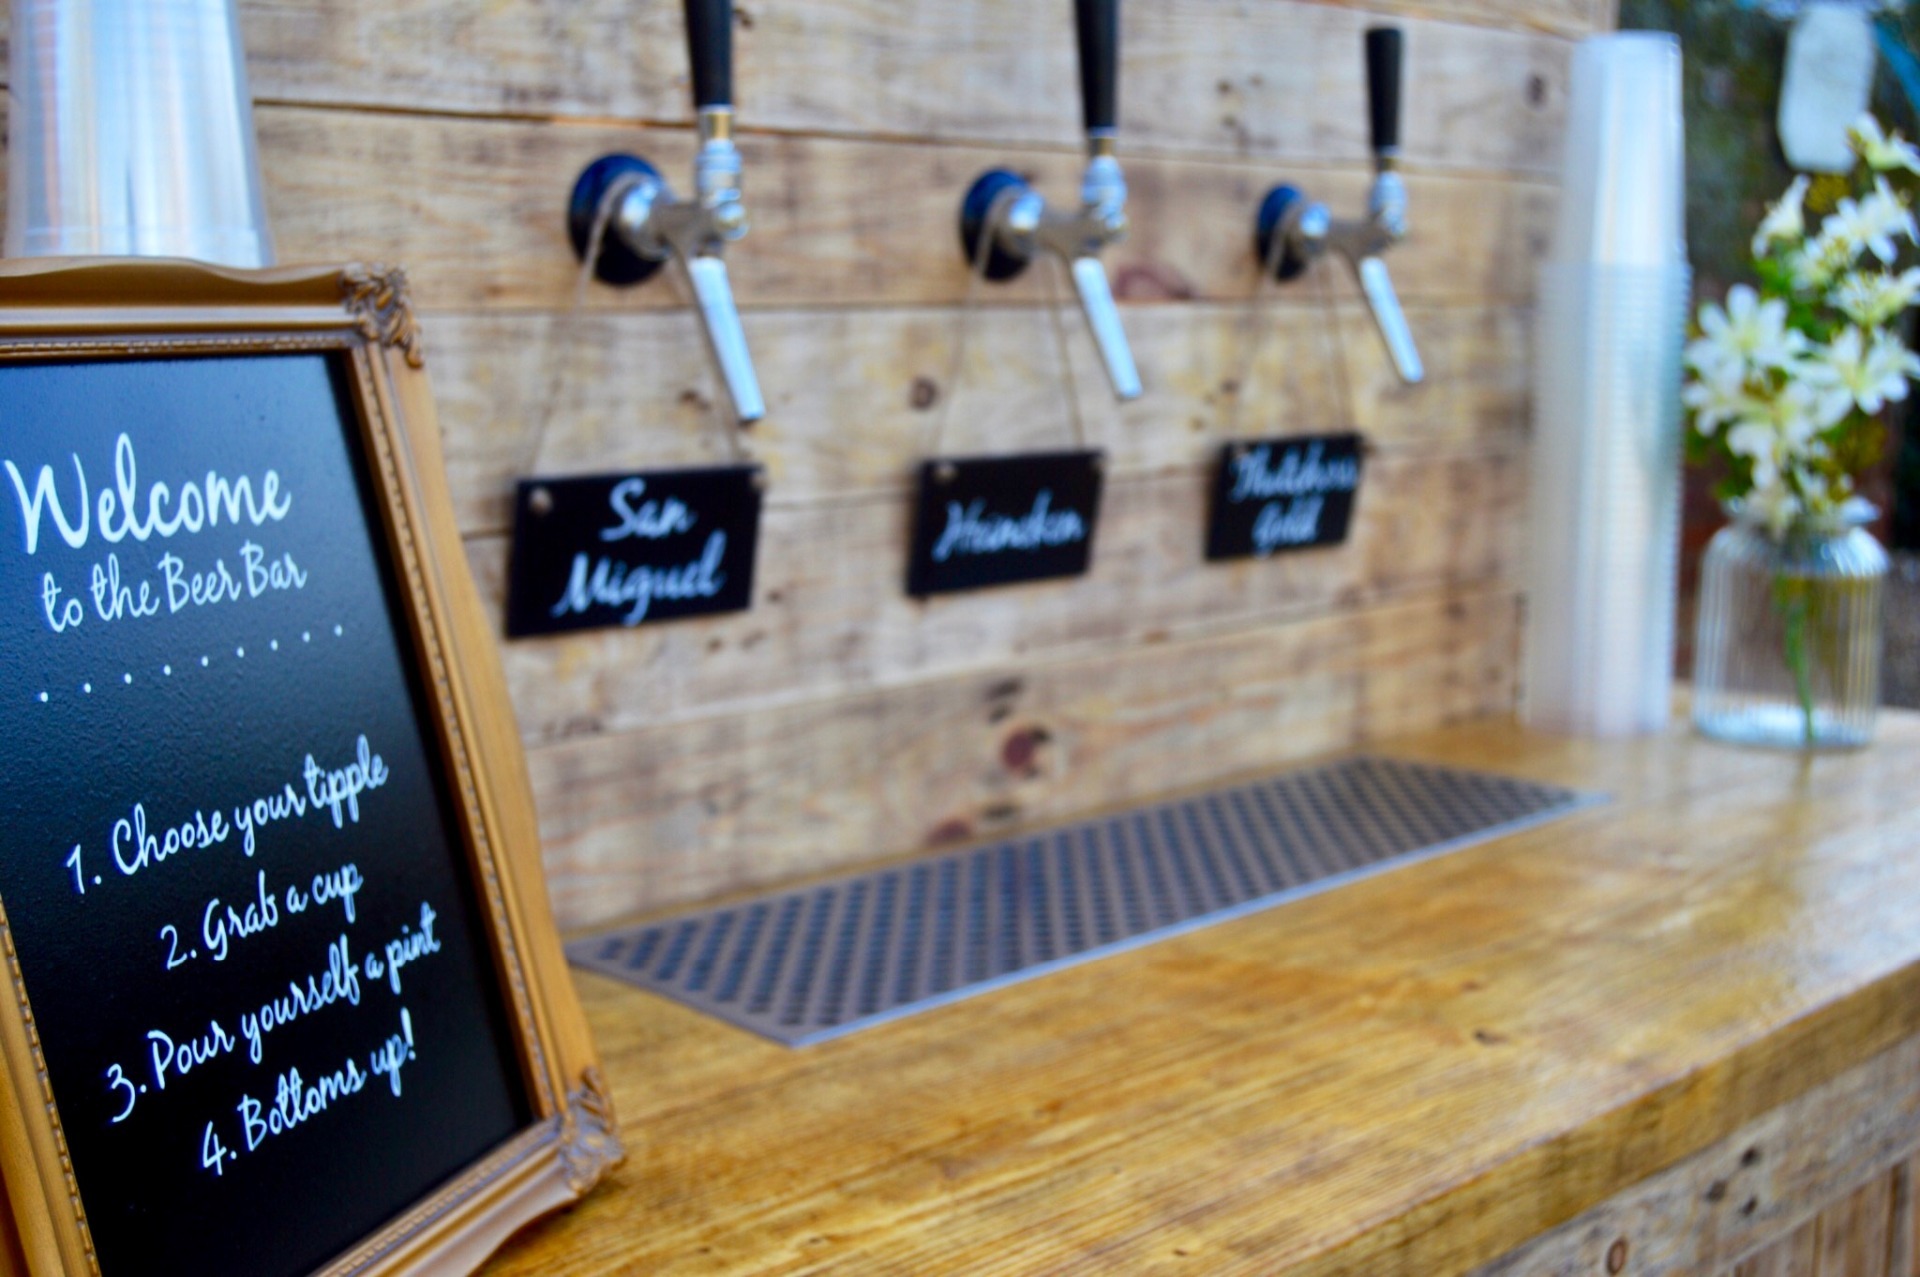 Wooden self-serve beer bar